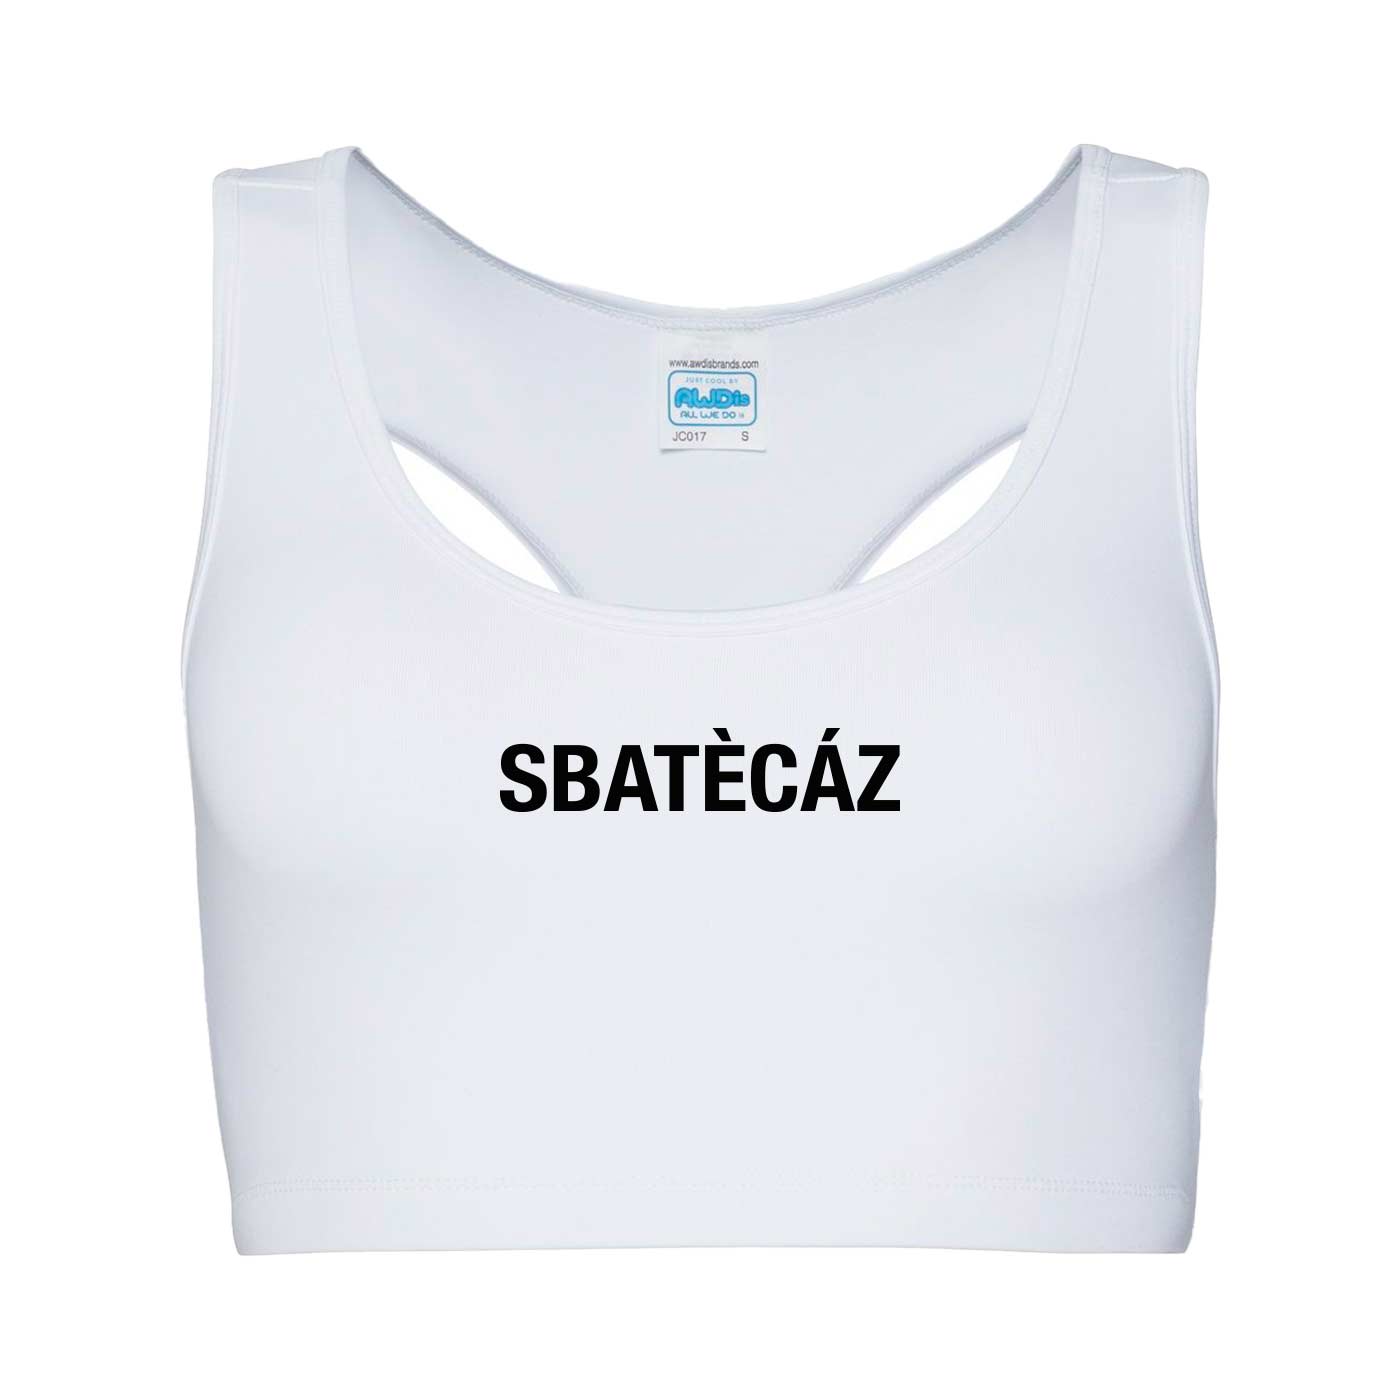 Top Sbatecaz - Girlie Cool Sports Crop Top